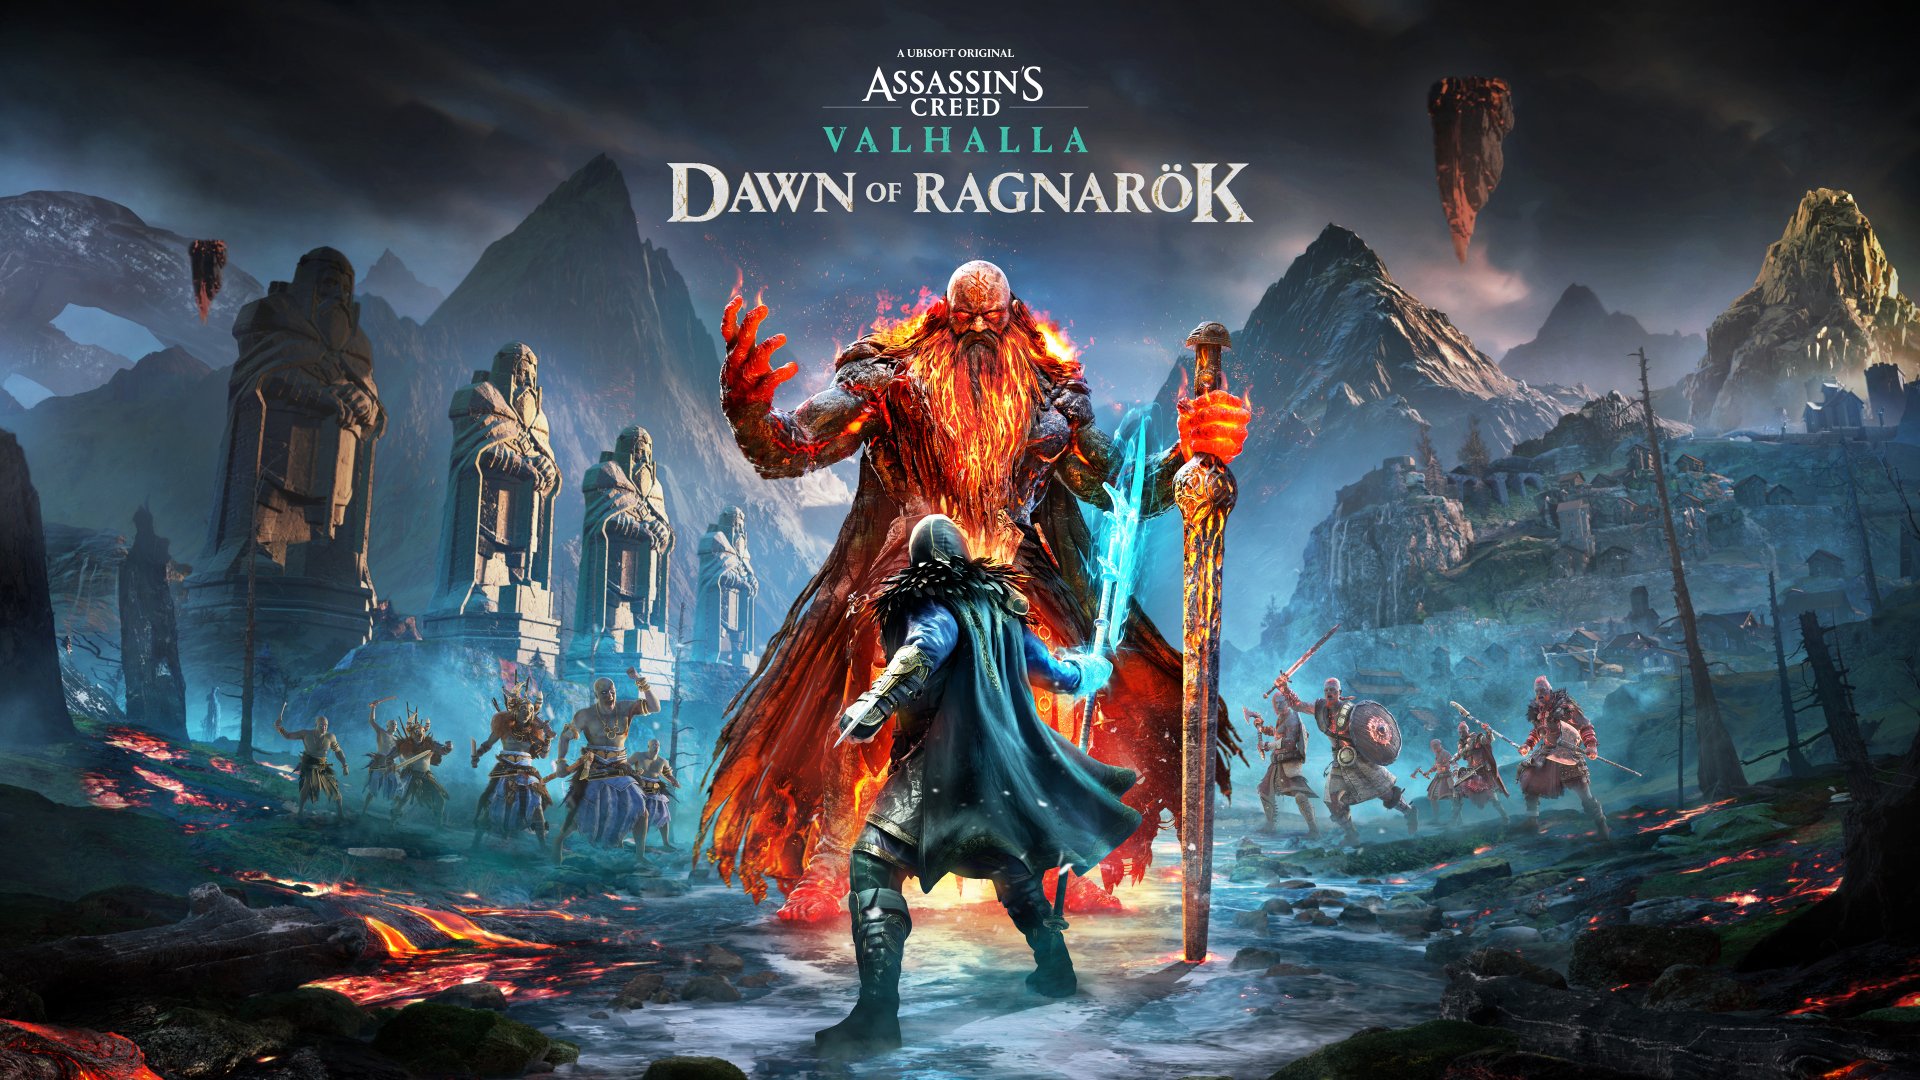 God of War Ragnarök: DLC Valhalla grátis disponível esta semana!